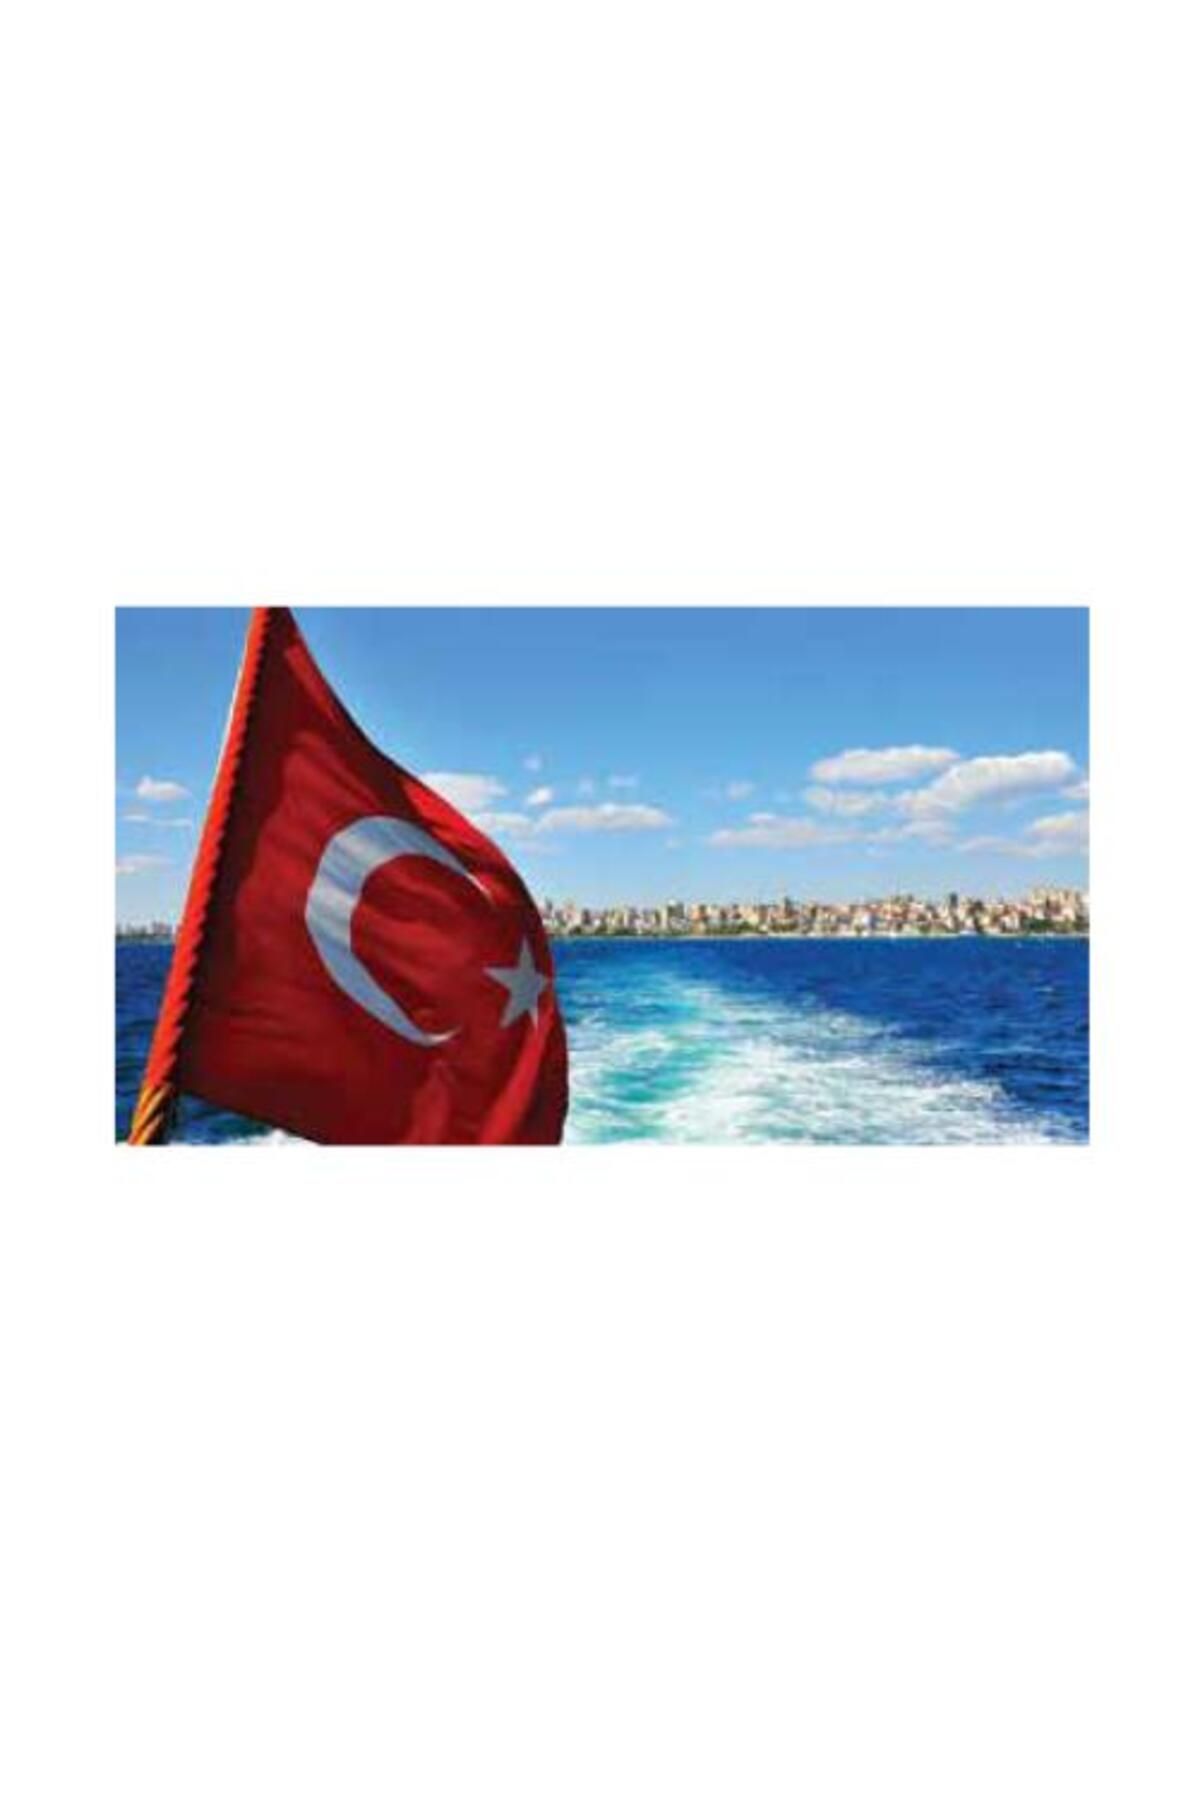 KALE Türk Bayrağı 50x75cm